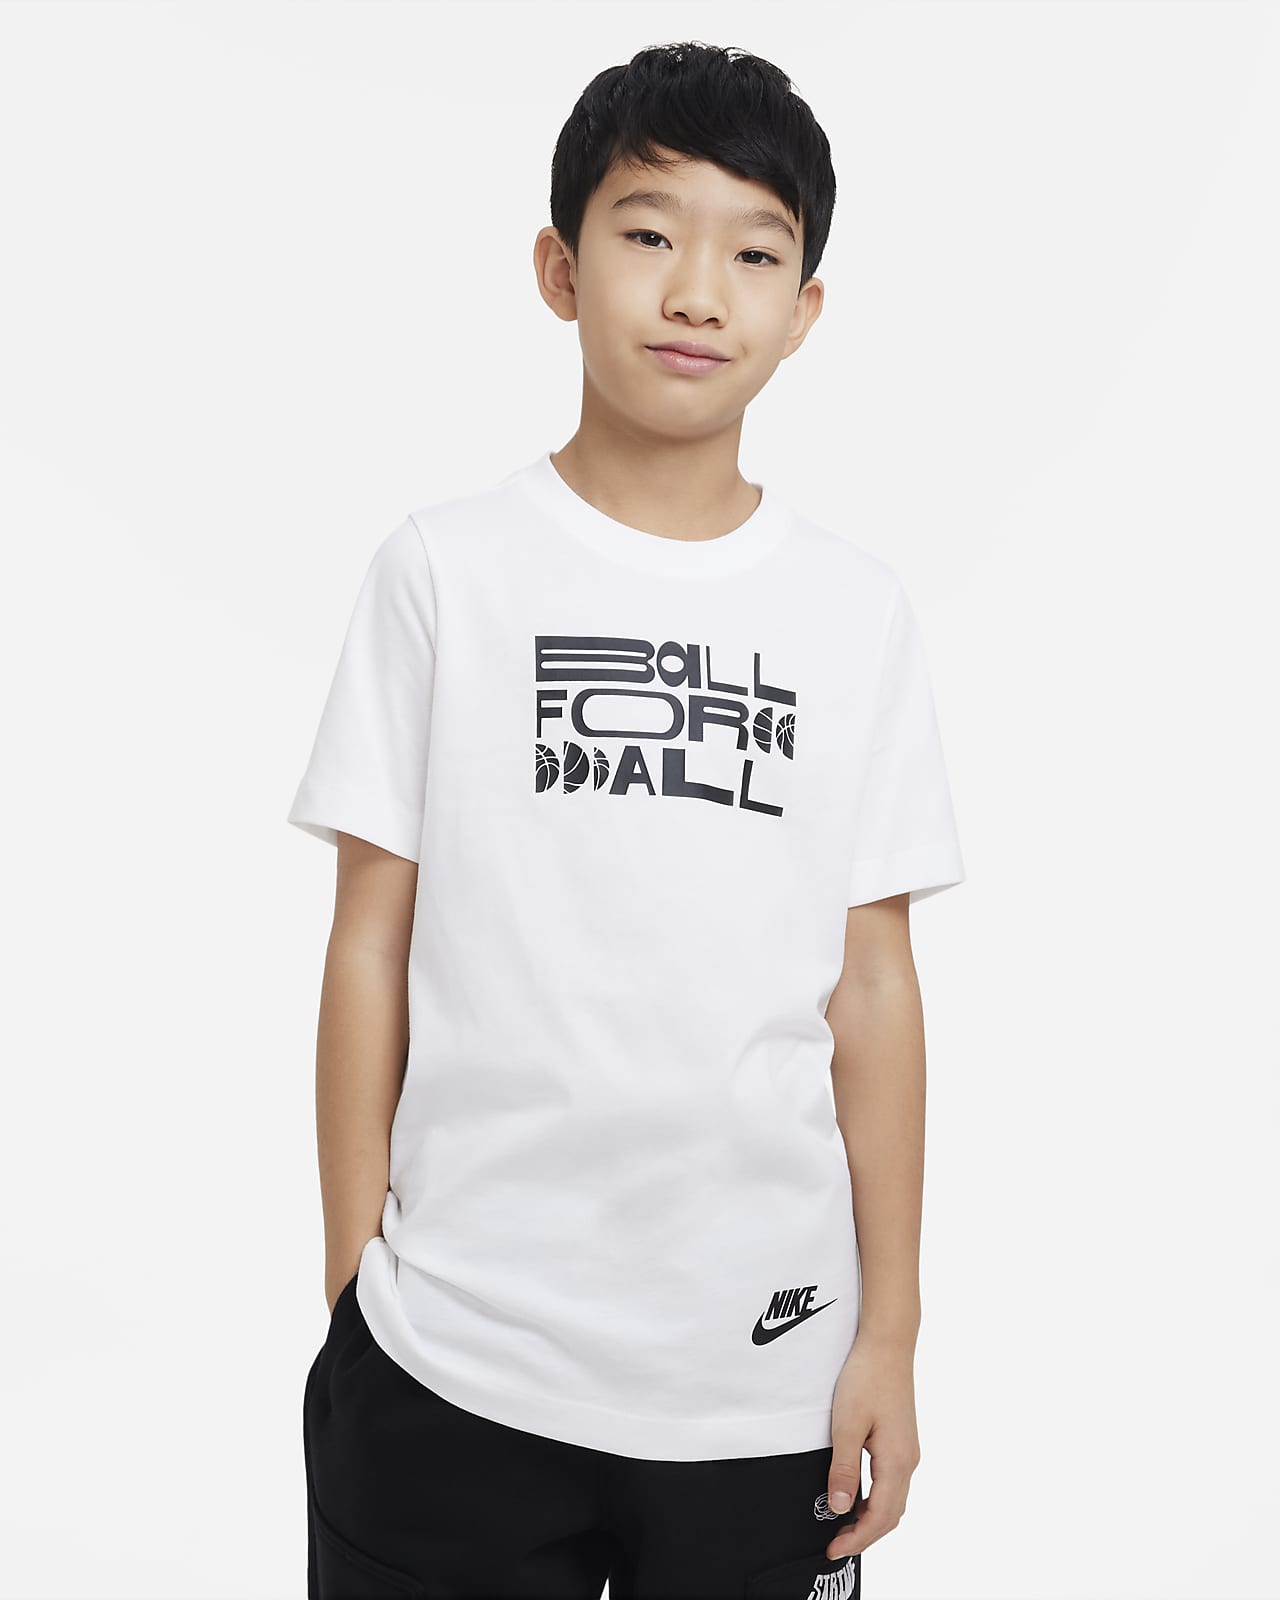 NIKE公式】ナイキ スポーツウェア ジュニア (ボーイズ) Tシャツ